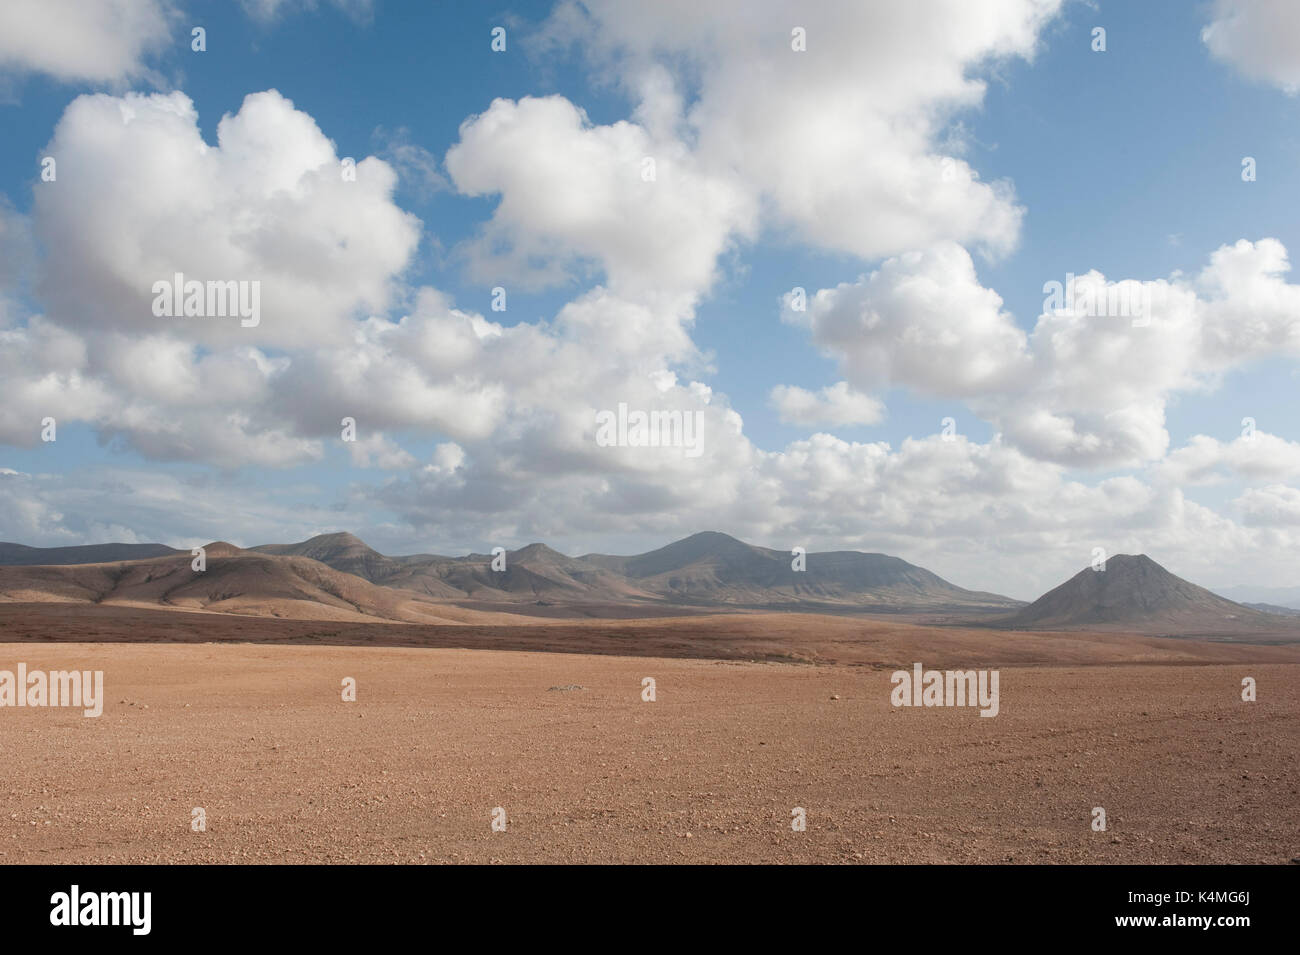 Landscape Views of Los Molinos, Fuerteventura, Canary Islands, Spain Stock Photo